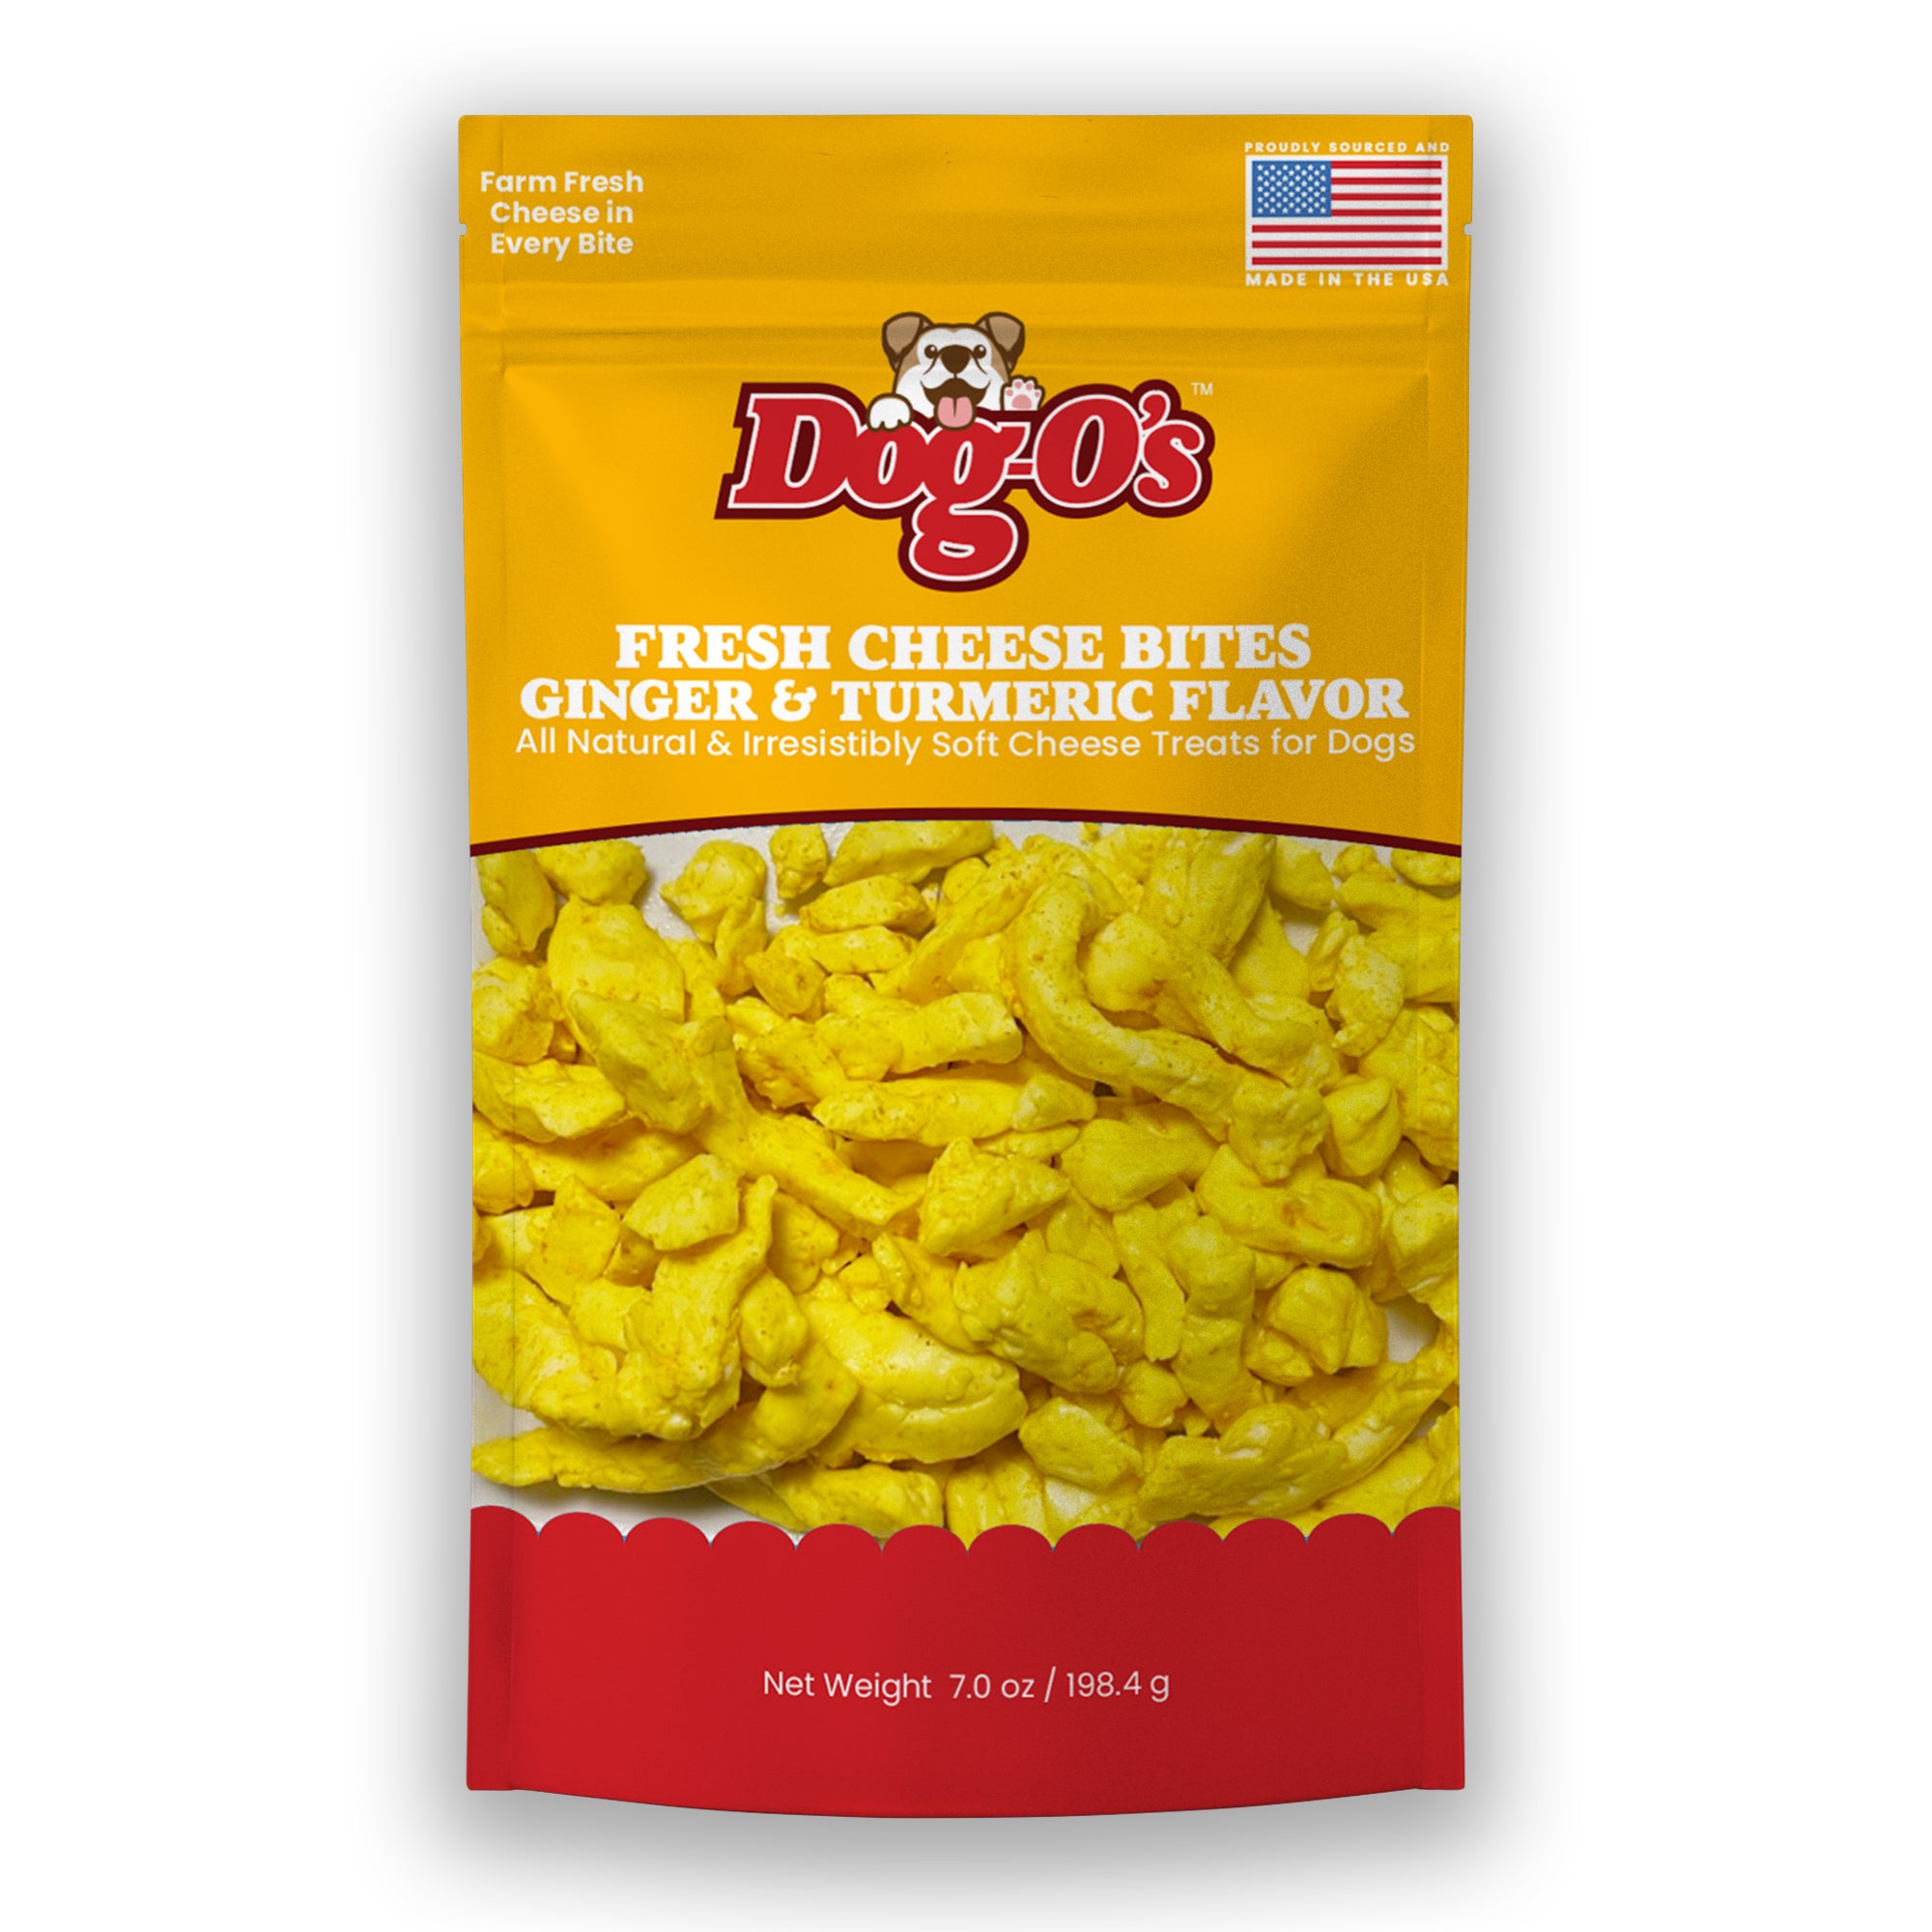 Fresh Cheese Bites